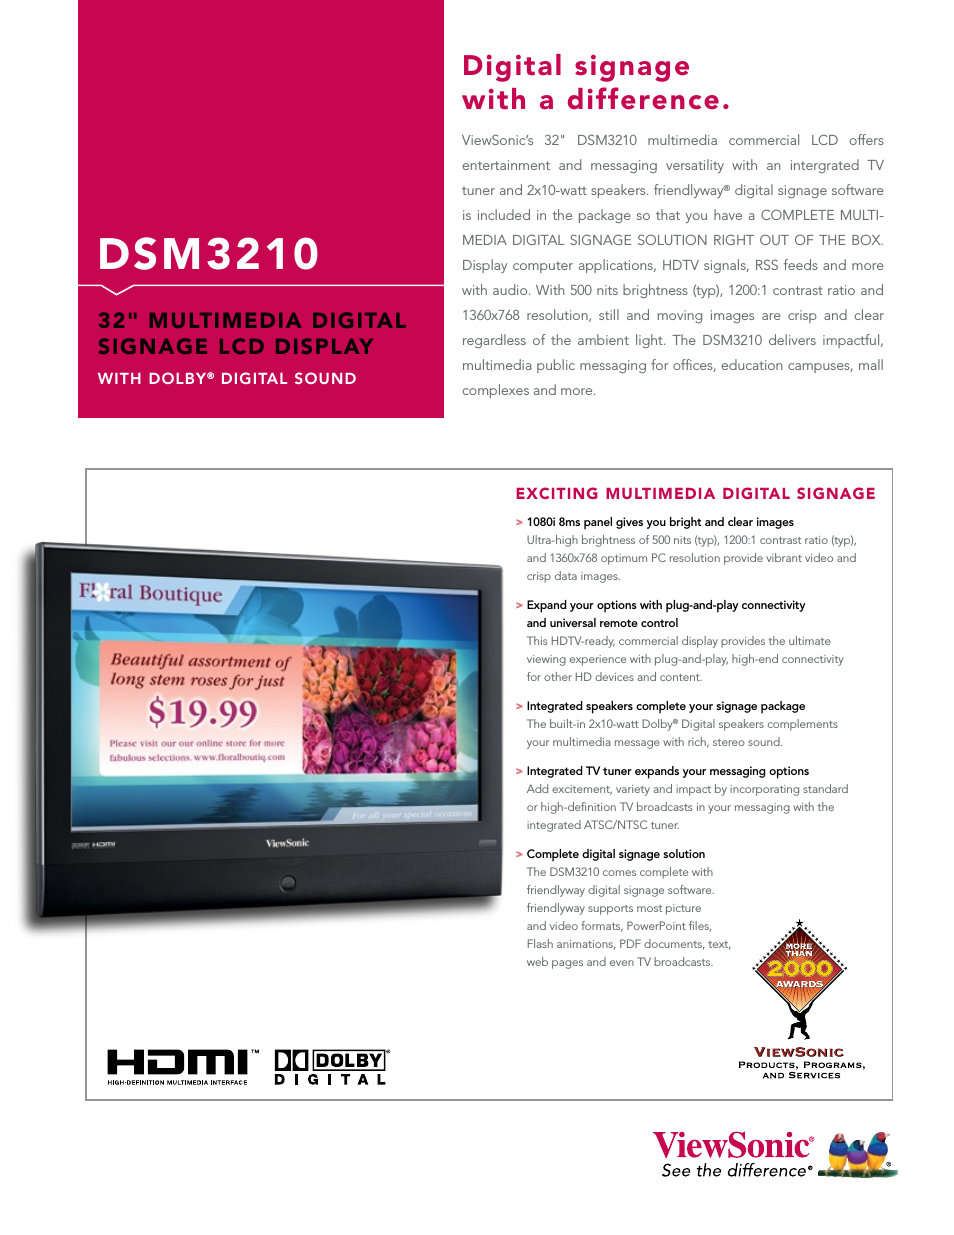 DSM3210